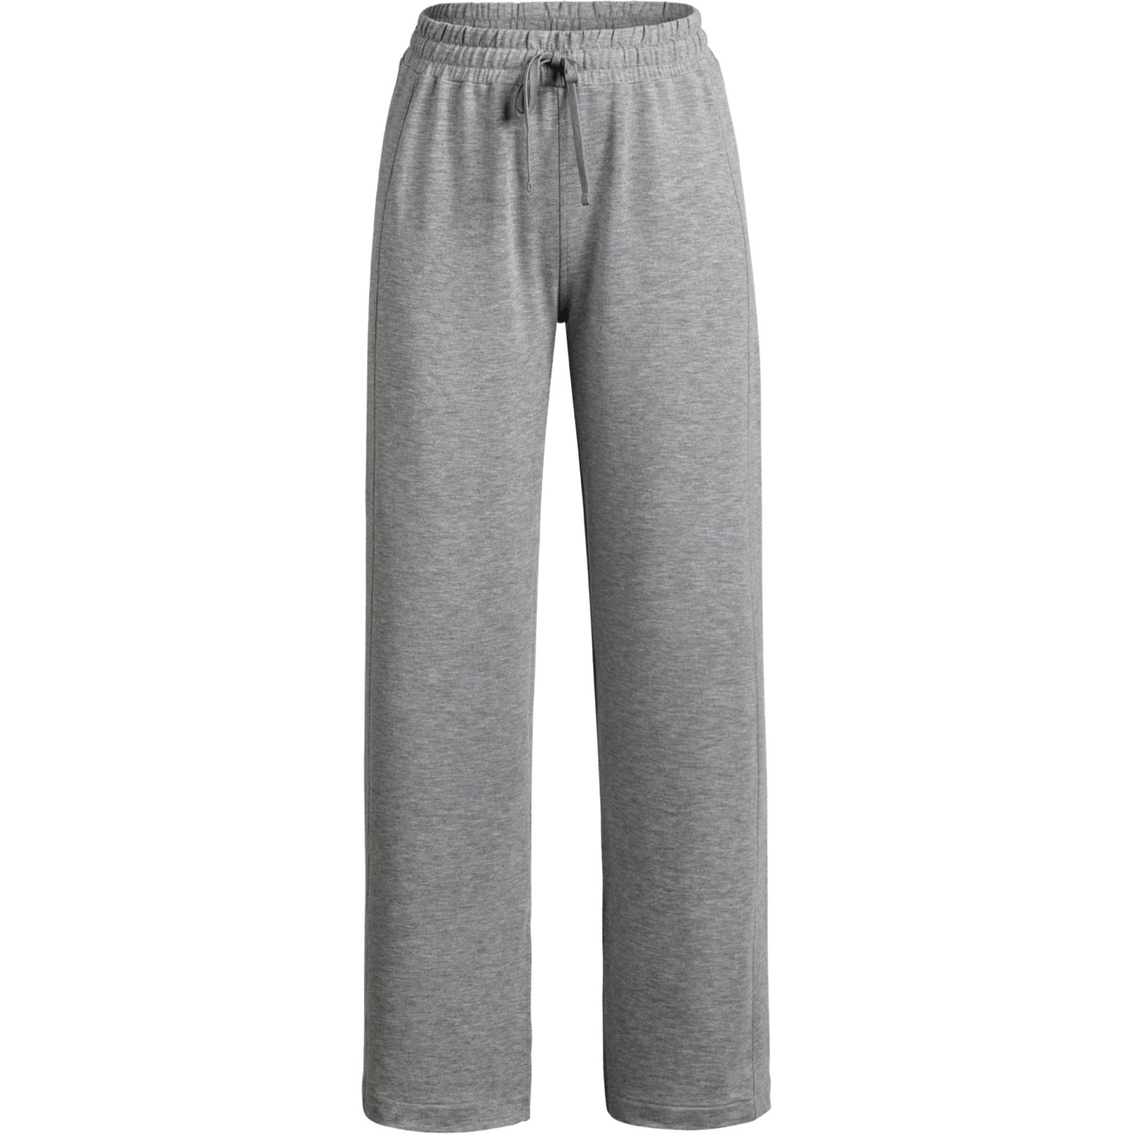 Municipal Wide Leg Sweatpants | Pants & Capris | Clothing & Accessories ...